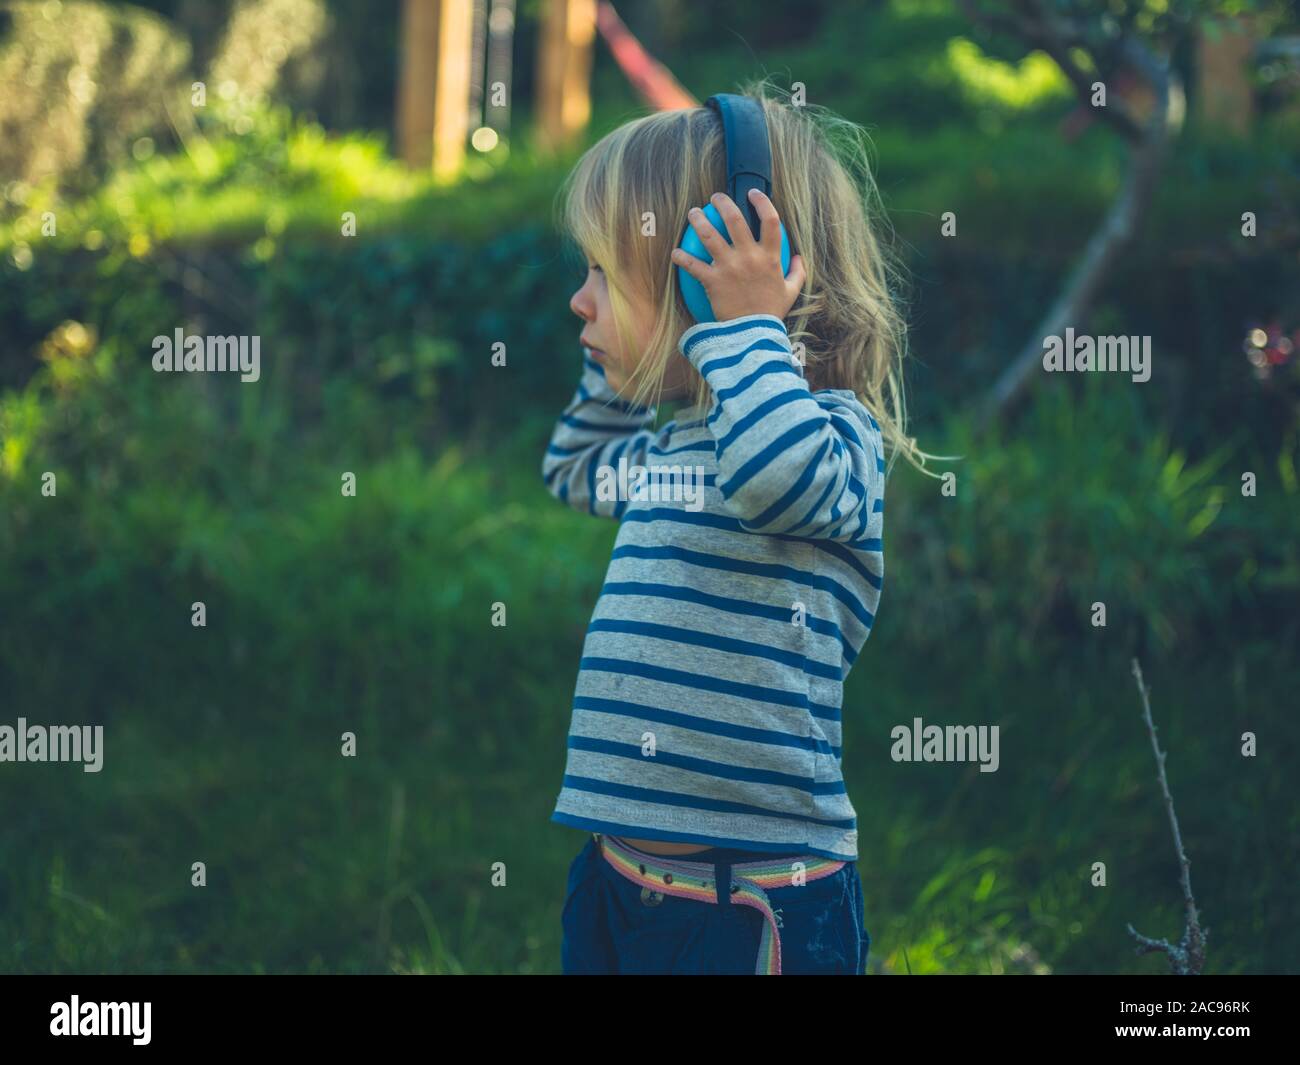 Ein kleines Kind ist das Tragen von Gehörschutz in einem Garten Stockfoto